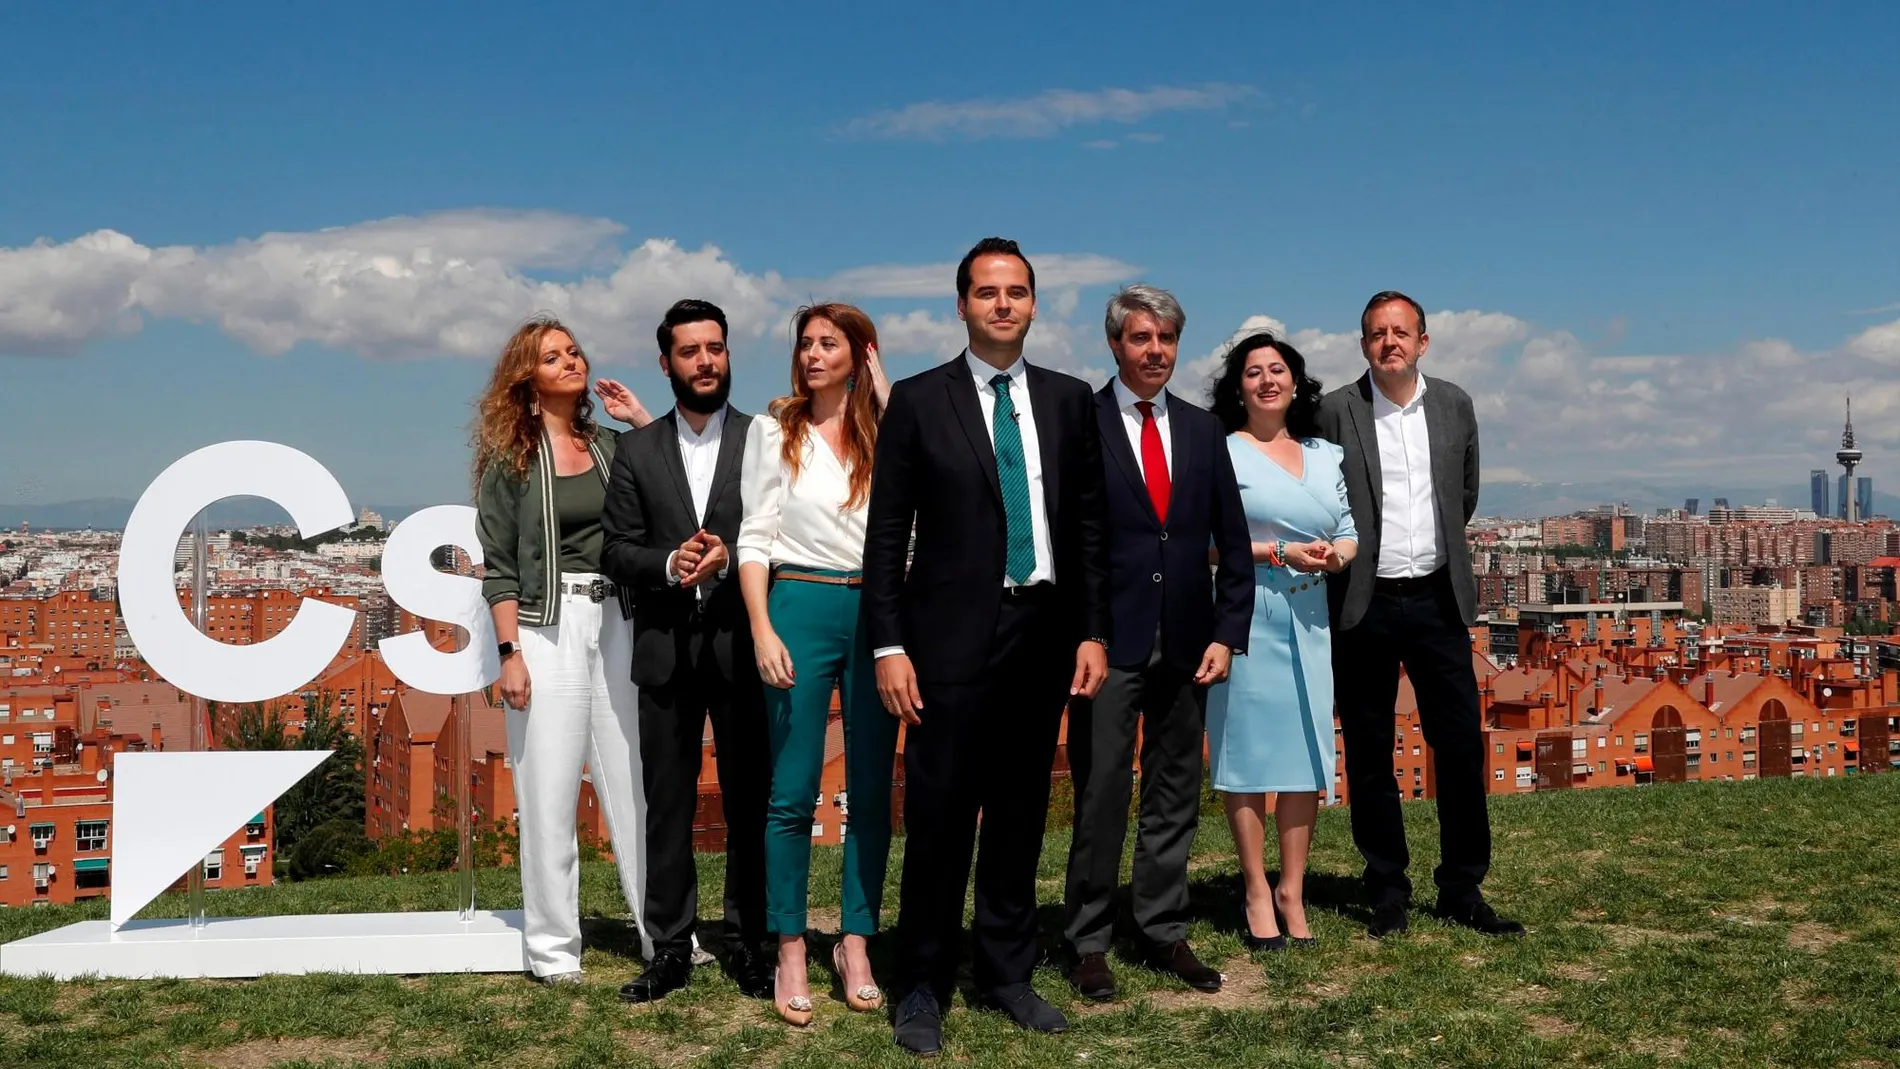 El candidato de Ciudadanos a la Presidencia de la Comunidad de Madrid, Ignacio Aguado (c), protagoniza una foto de familia junto a los miembros de su candidatura, entre los que se incluye el expresidente madrileño Ángel Garrido (3d).